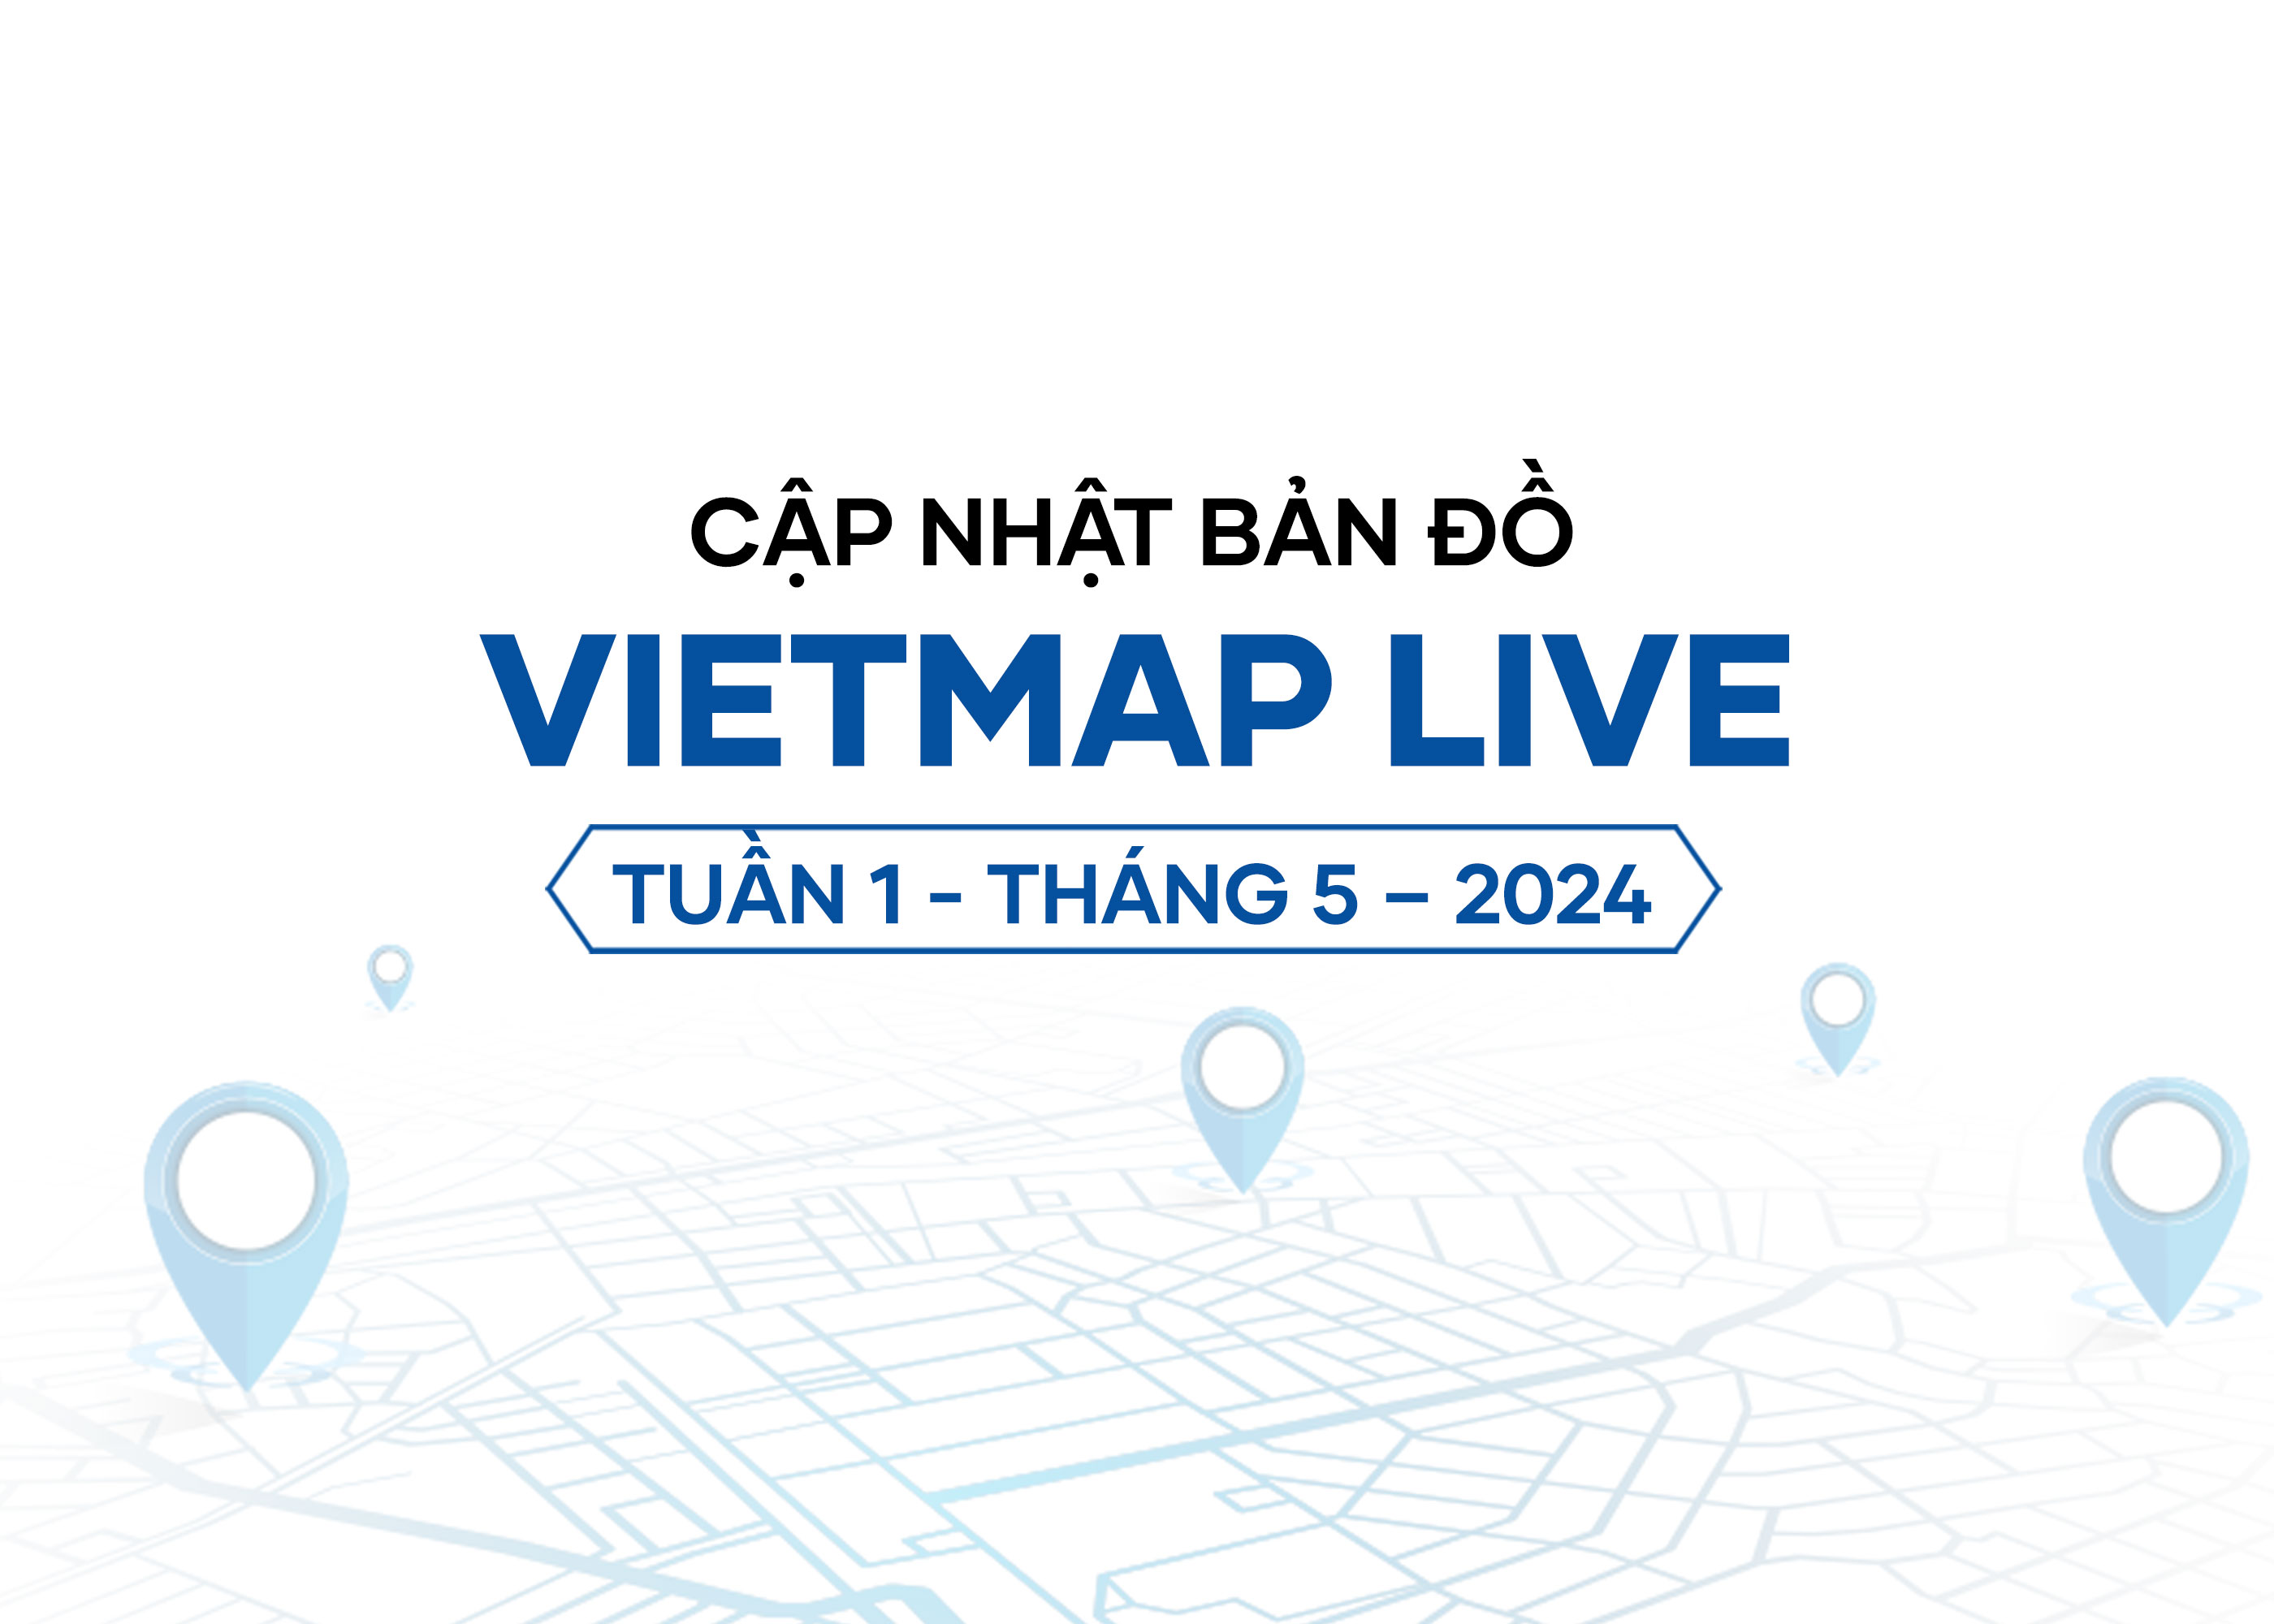 VIETMAP LIVE cập nhật dữ liệu bản đồ Tuần 1 - Tháng 5/2024